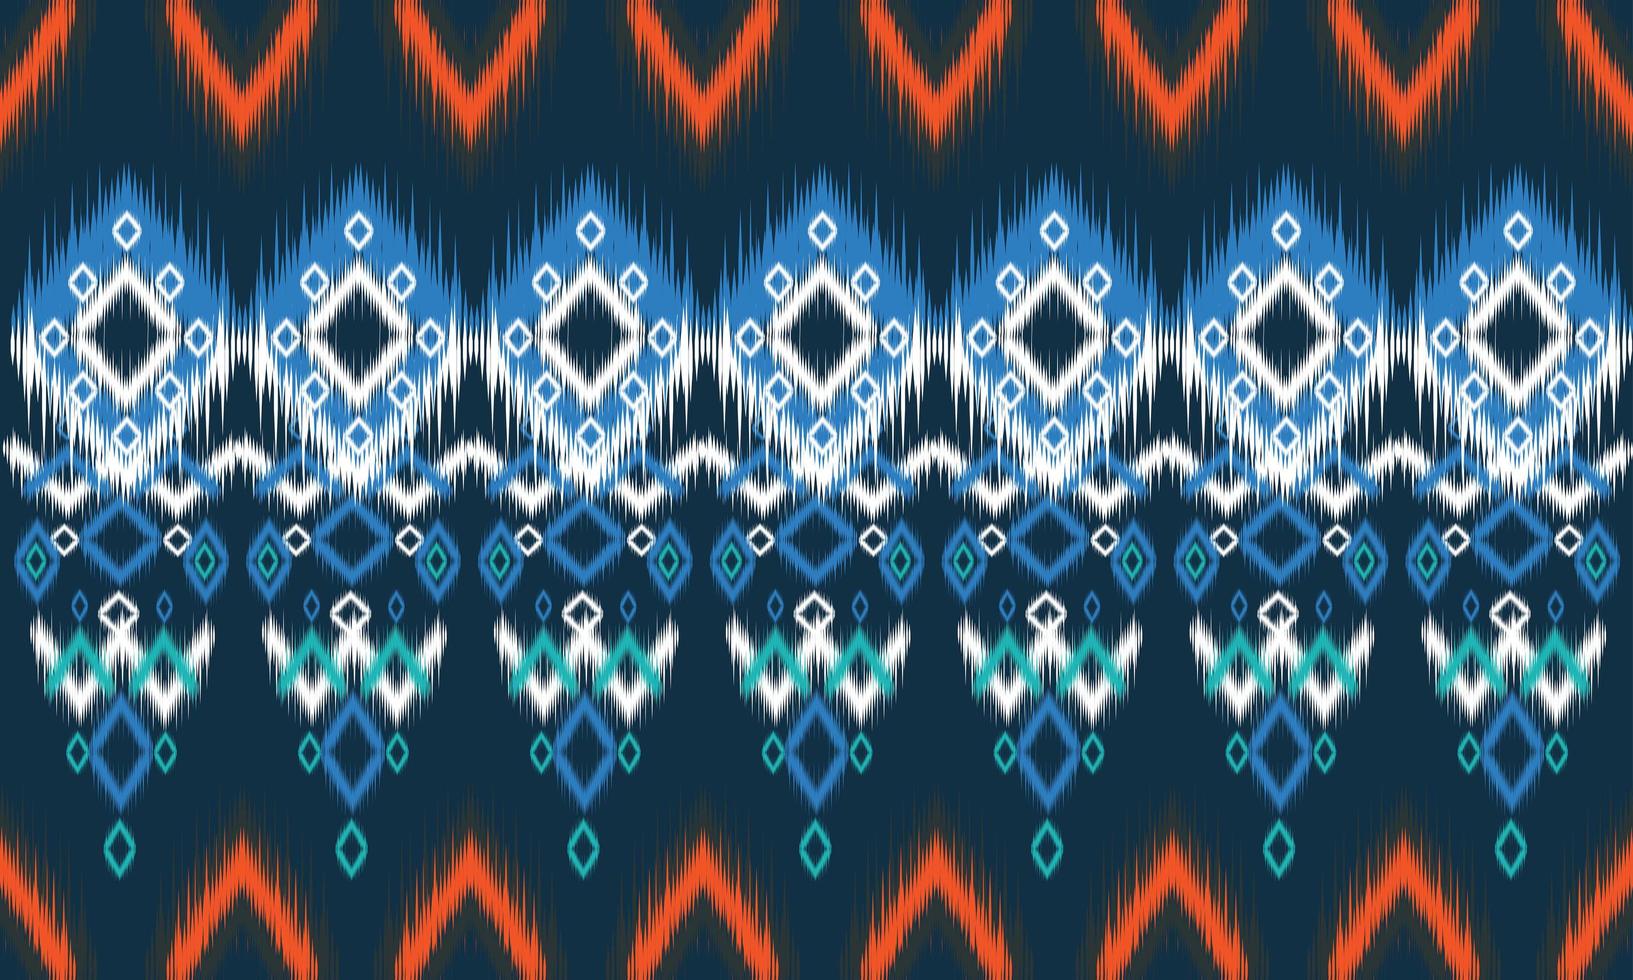 diseño tradicional de patrón oriental étnico geométrico para fondo, alfombra, papel tapiz, ropa, envoltura, batik, tela, estilo de bordado de ilustración vectorial. vector